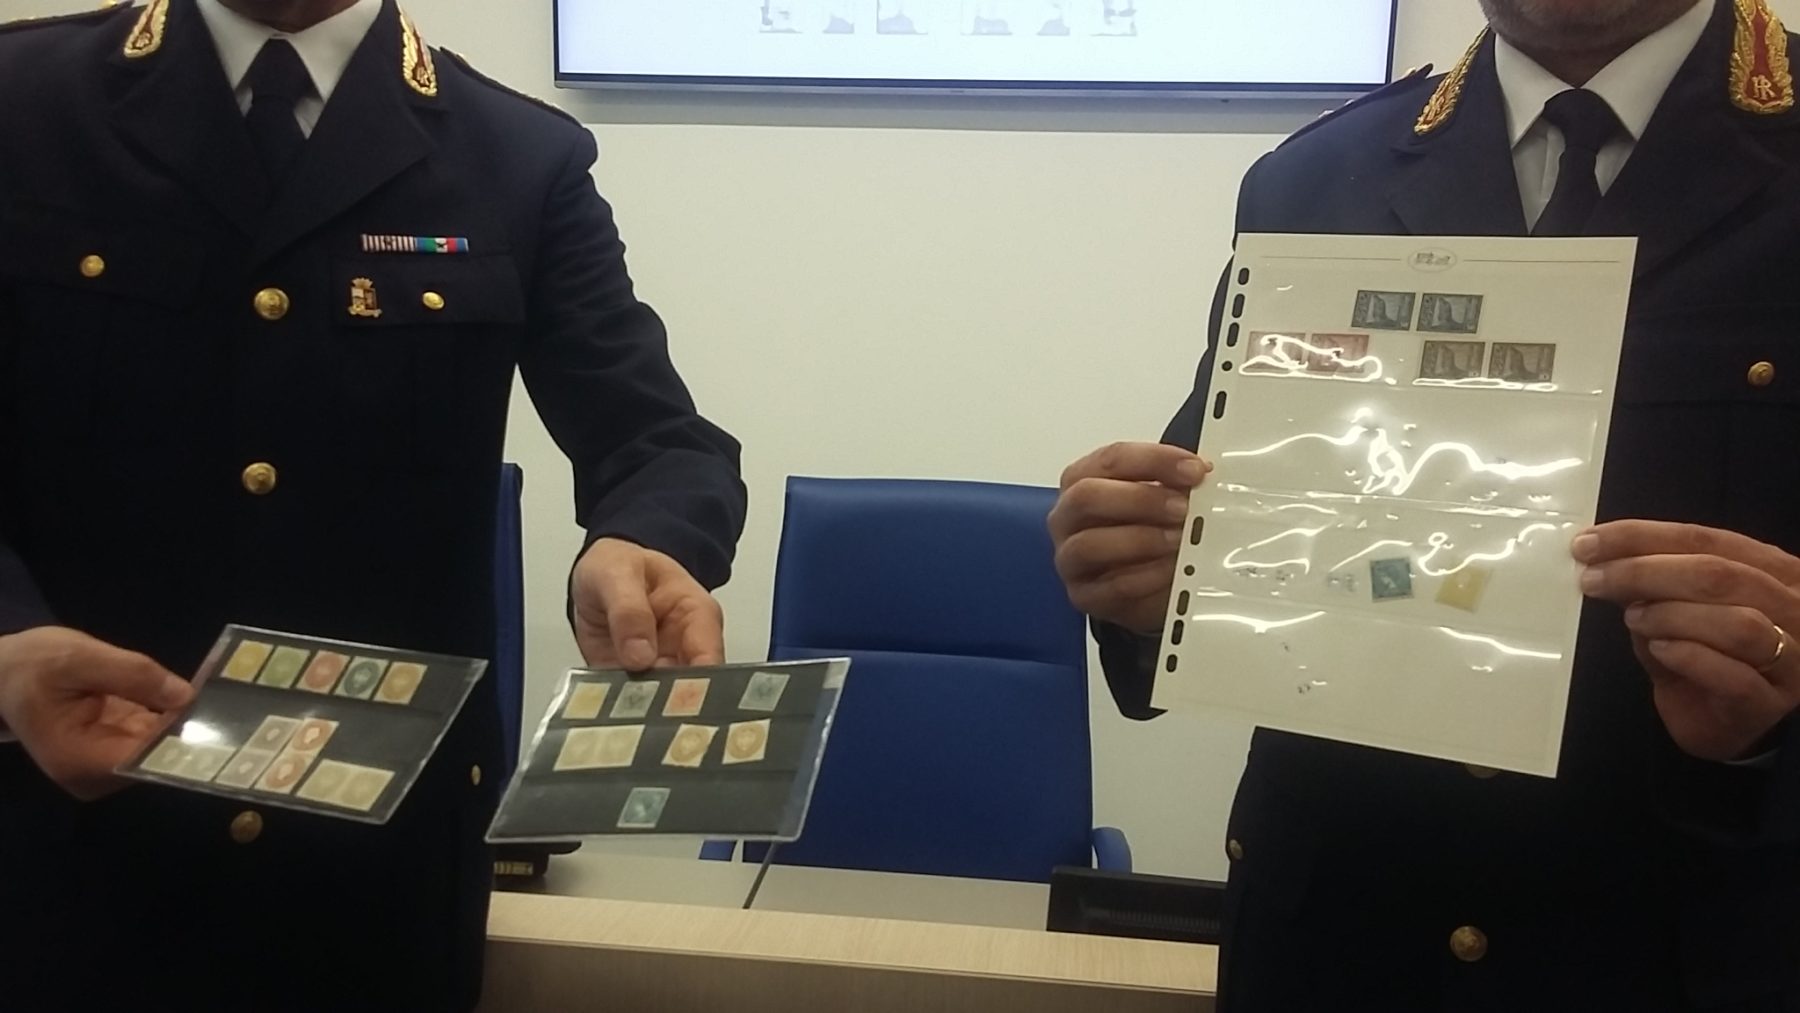 . 300mila euro di francobolli rubati ora ritrovati - 25/02/2020